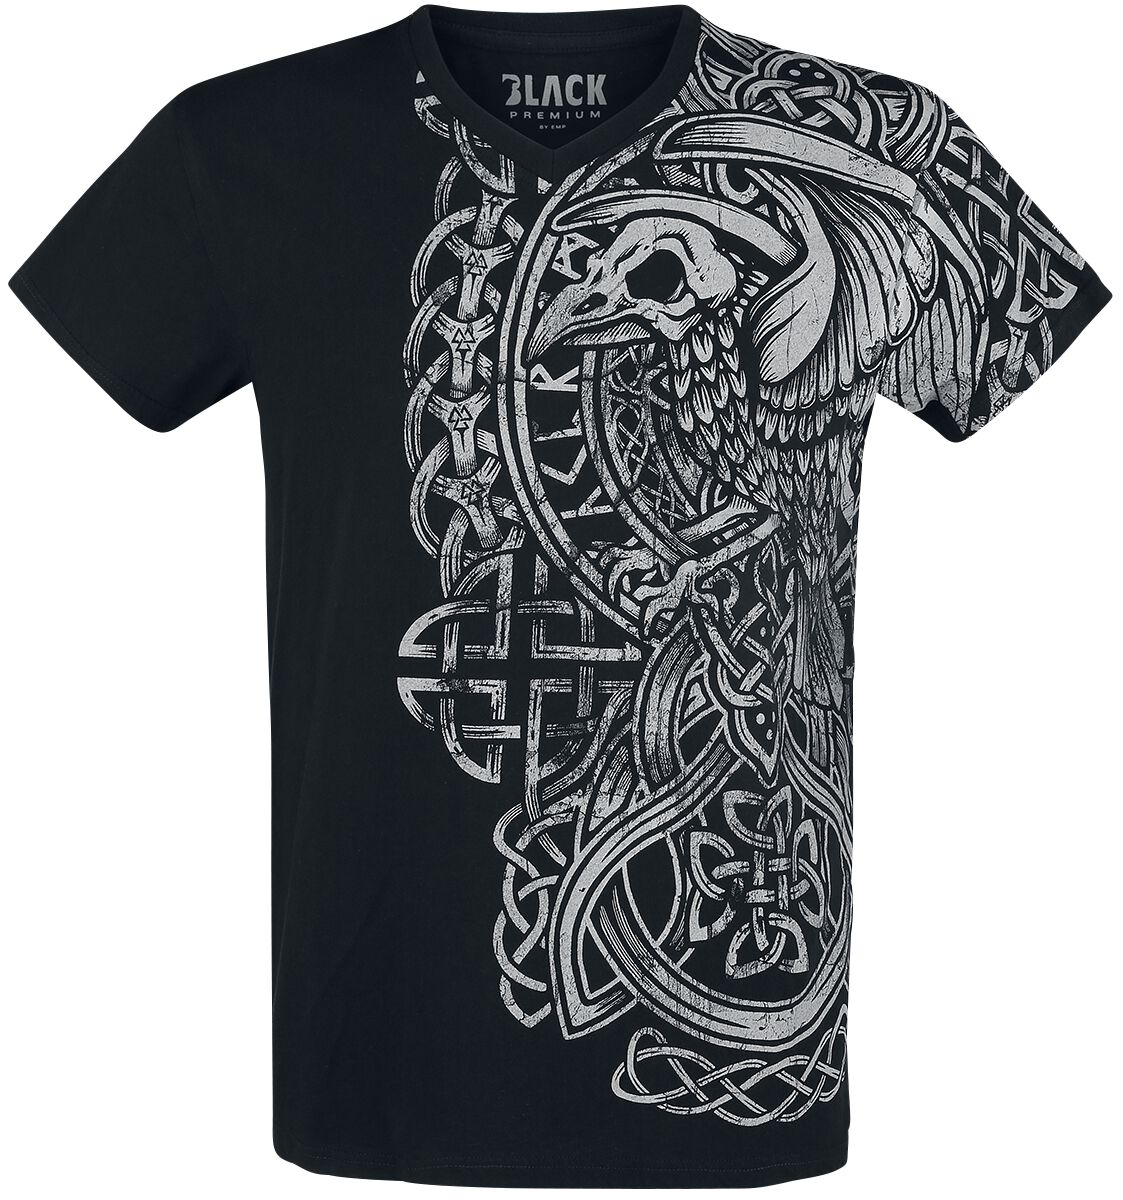 Black Premium by EMP schwarzes T-Shirt mit Print und V-Ausschnitt T-Shirt schwarz in L